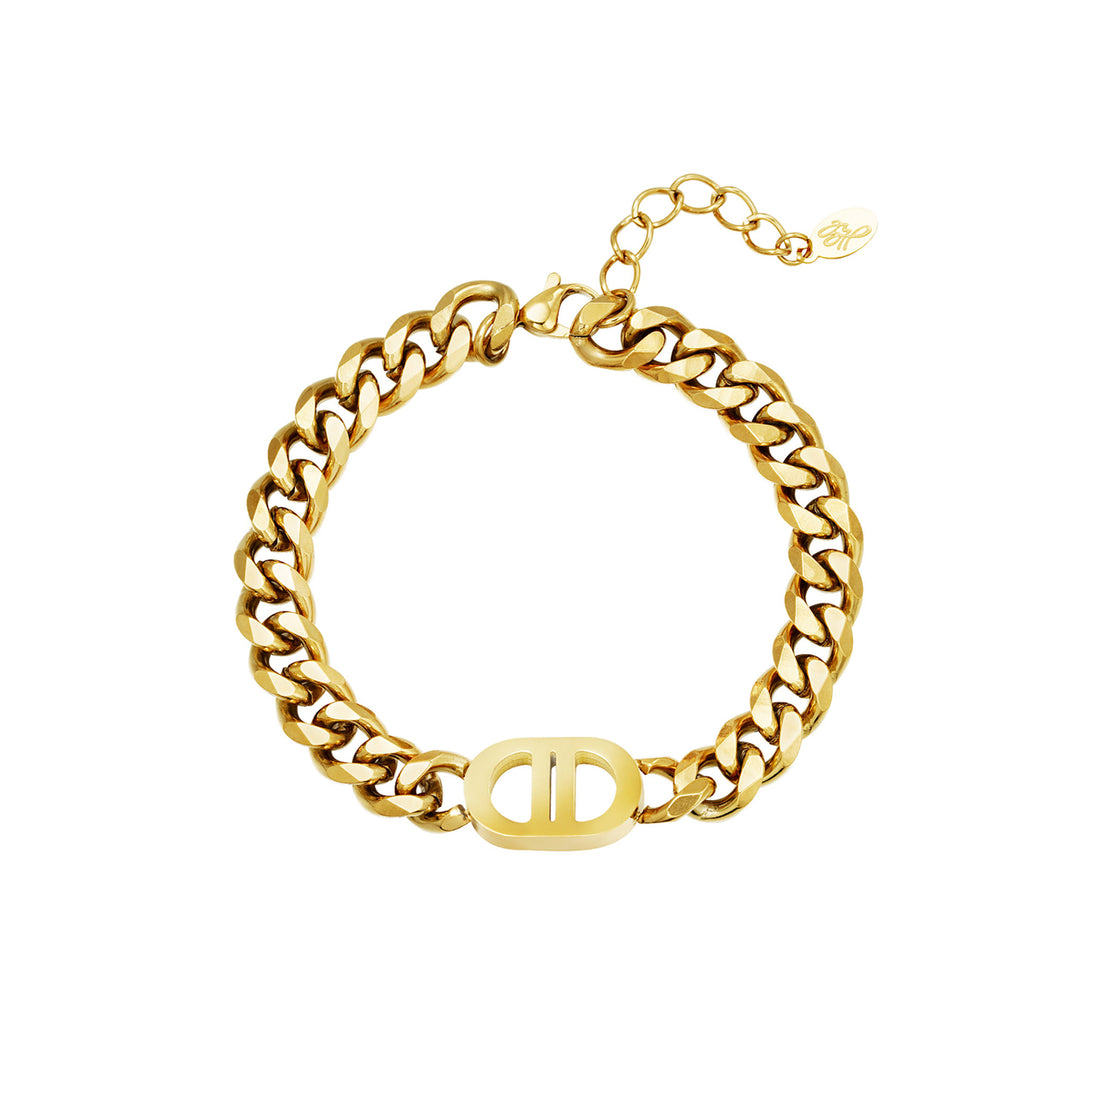 Gouden brede chain armband met logo bedel. De armband is gemaakt van roestvrij staal met een gold plated laagje. De armband is waterproof en verkleurt niet. Afmetingen: 16 cm + 3 cm.